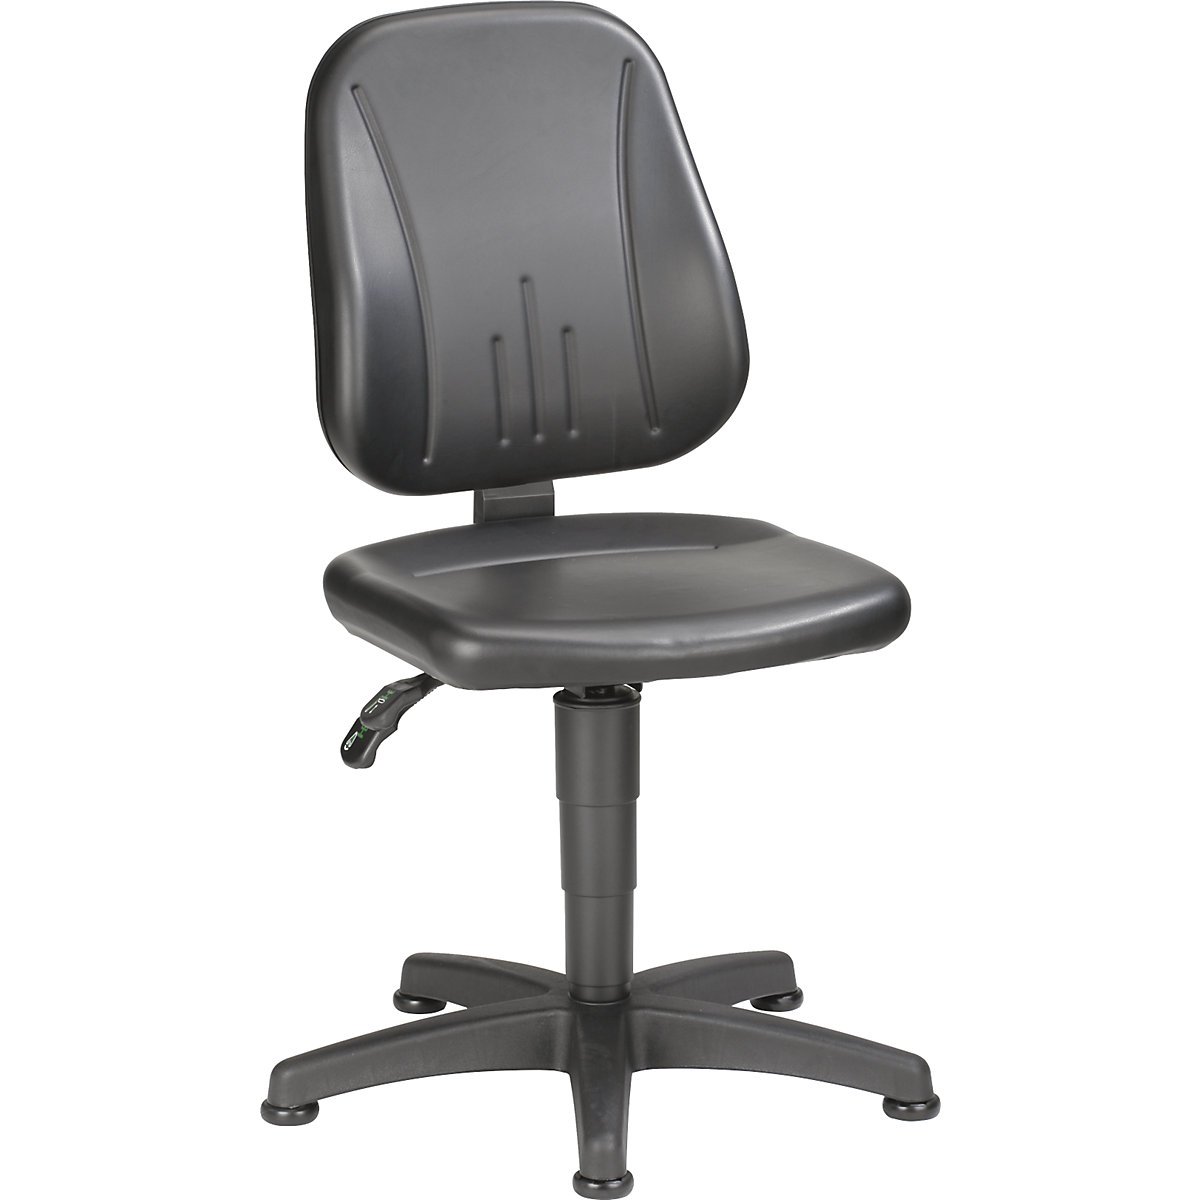 Pracovní otočná židle – bimos, s přestavováním výšky plynovým pístem, koženkový potah, černá, s podlahovými patkami-17